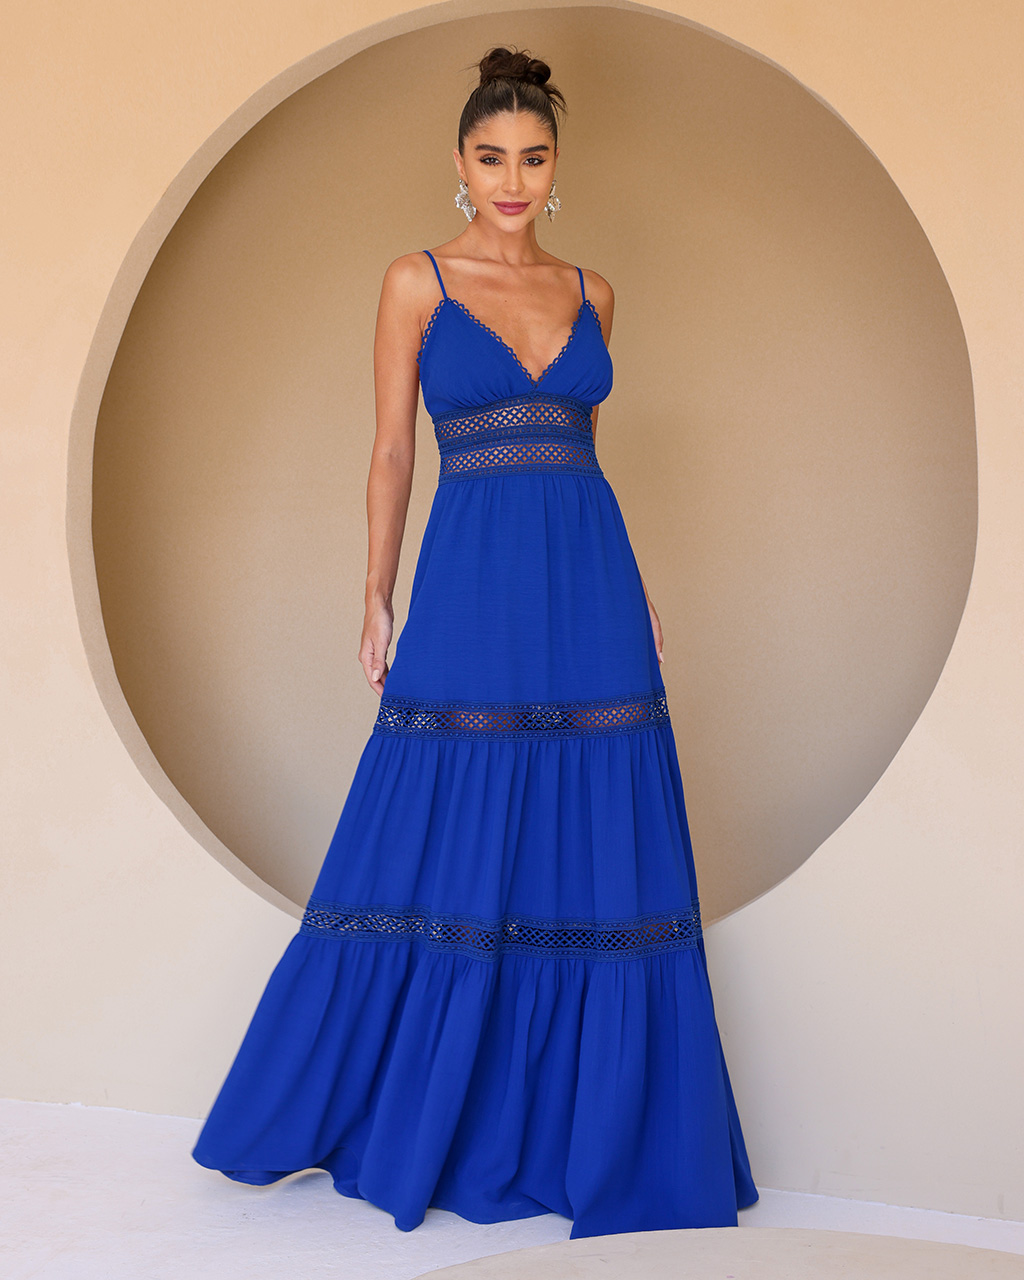 Vestido Longo Azul Analua - Empório NM